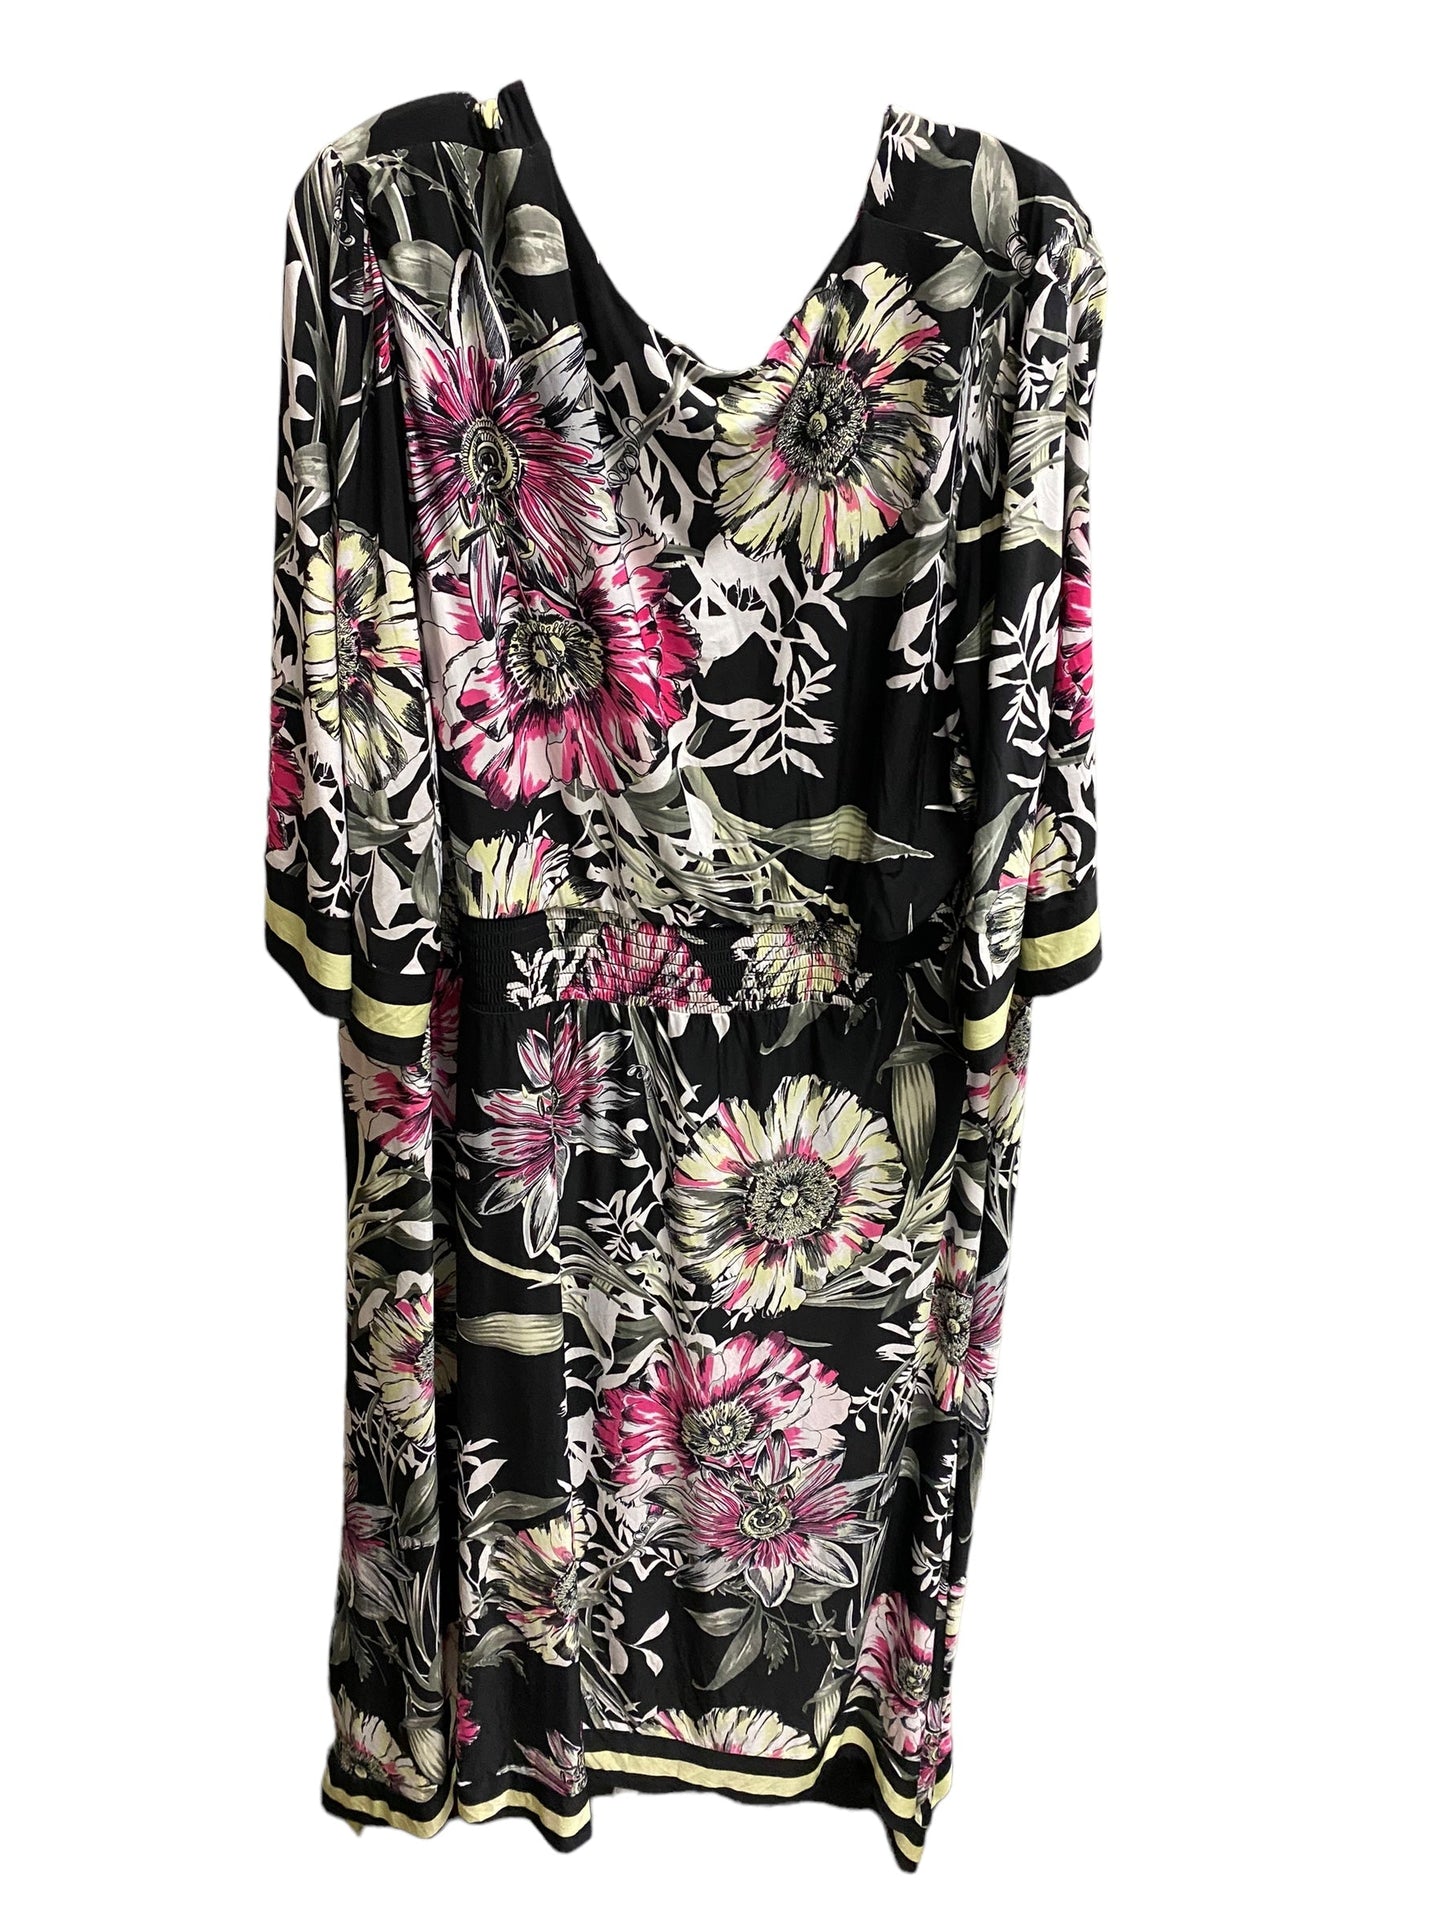 Floral Print Dress Casual Midi Inc, Size 3x